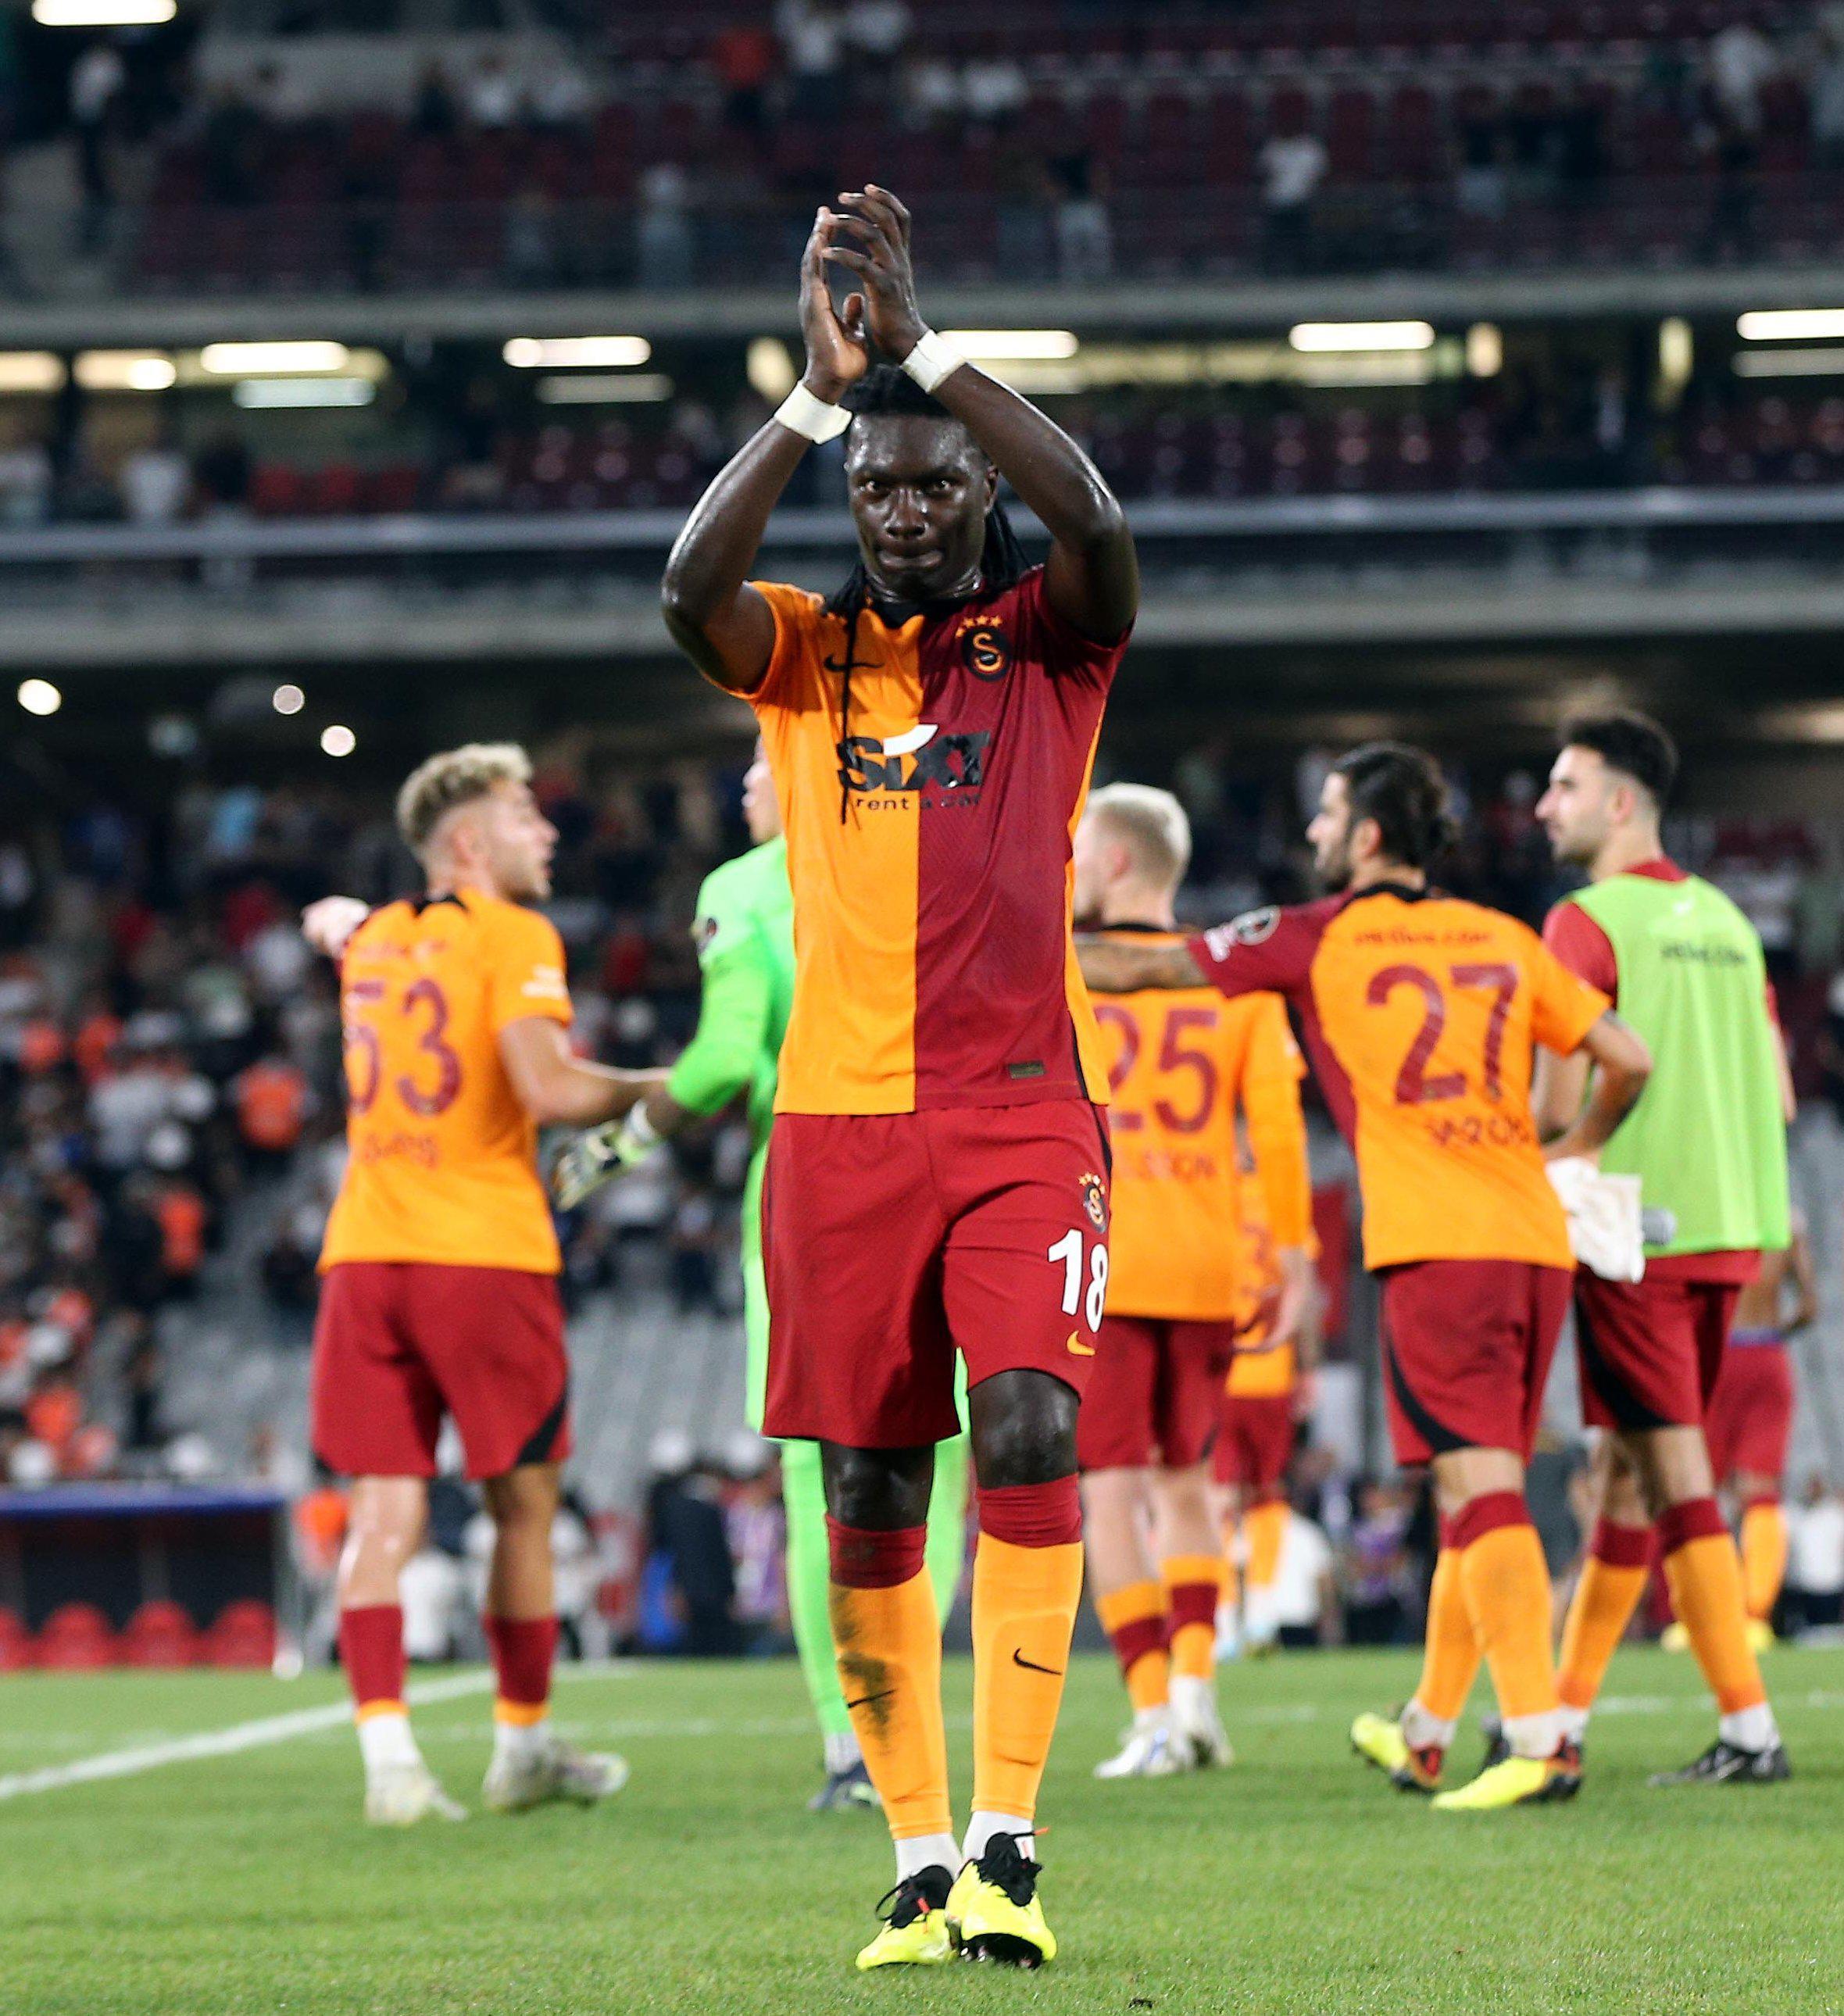 Fanatik Bizim Takım Galatasarayın transferlerini mercek altına aldı: Bu kadrodan fazlası şımarıklık olur